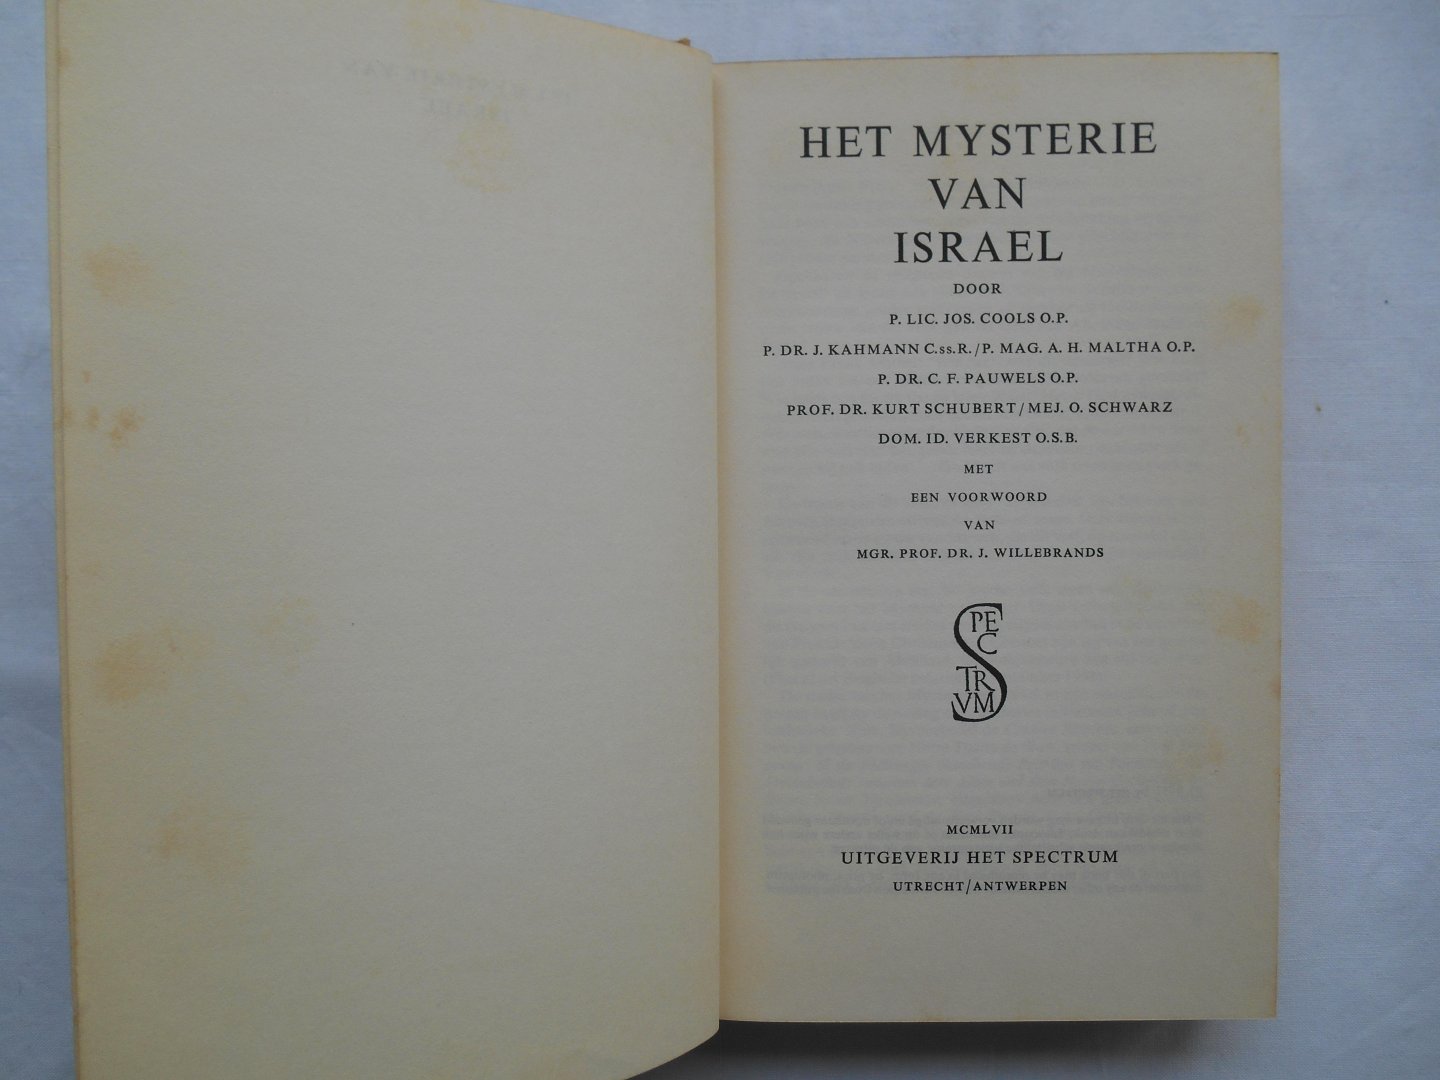 Pauwels, C.F. & anderen - Het mysterie van Israel